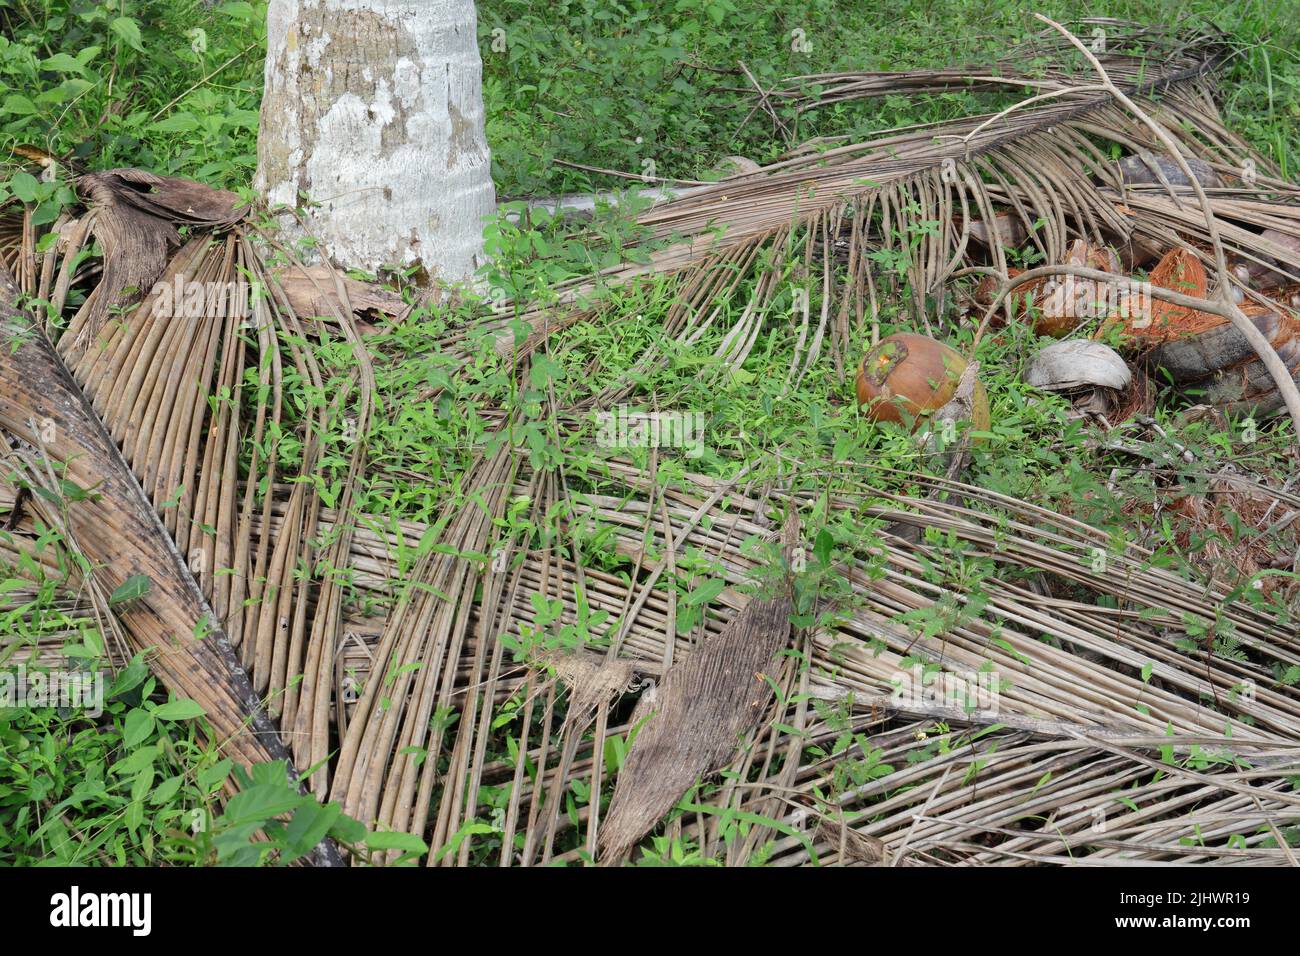 Une vue de base du cocotier avec une noix de coco tombée près de l'arbre à la plantation de cocotiers au Sri Lanka. Banque D'Images